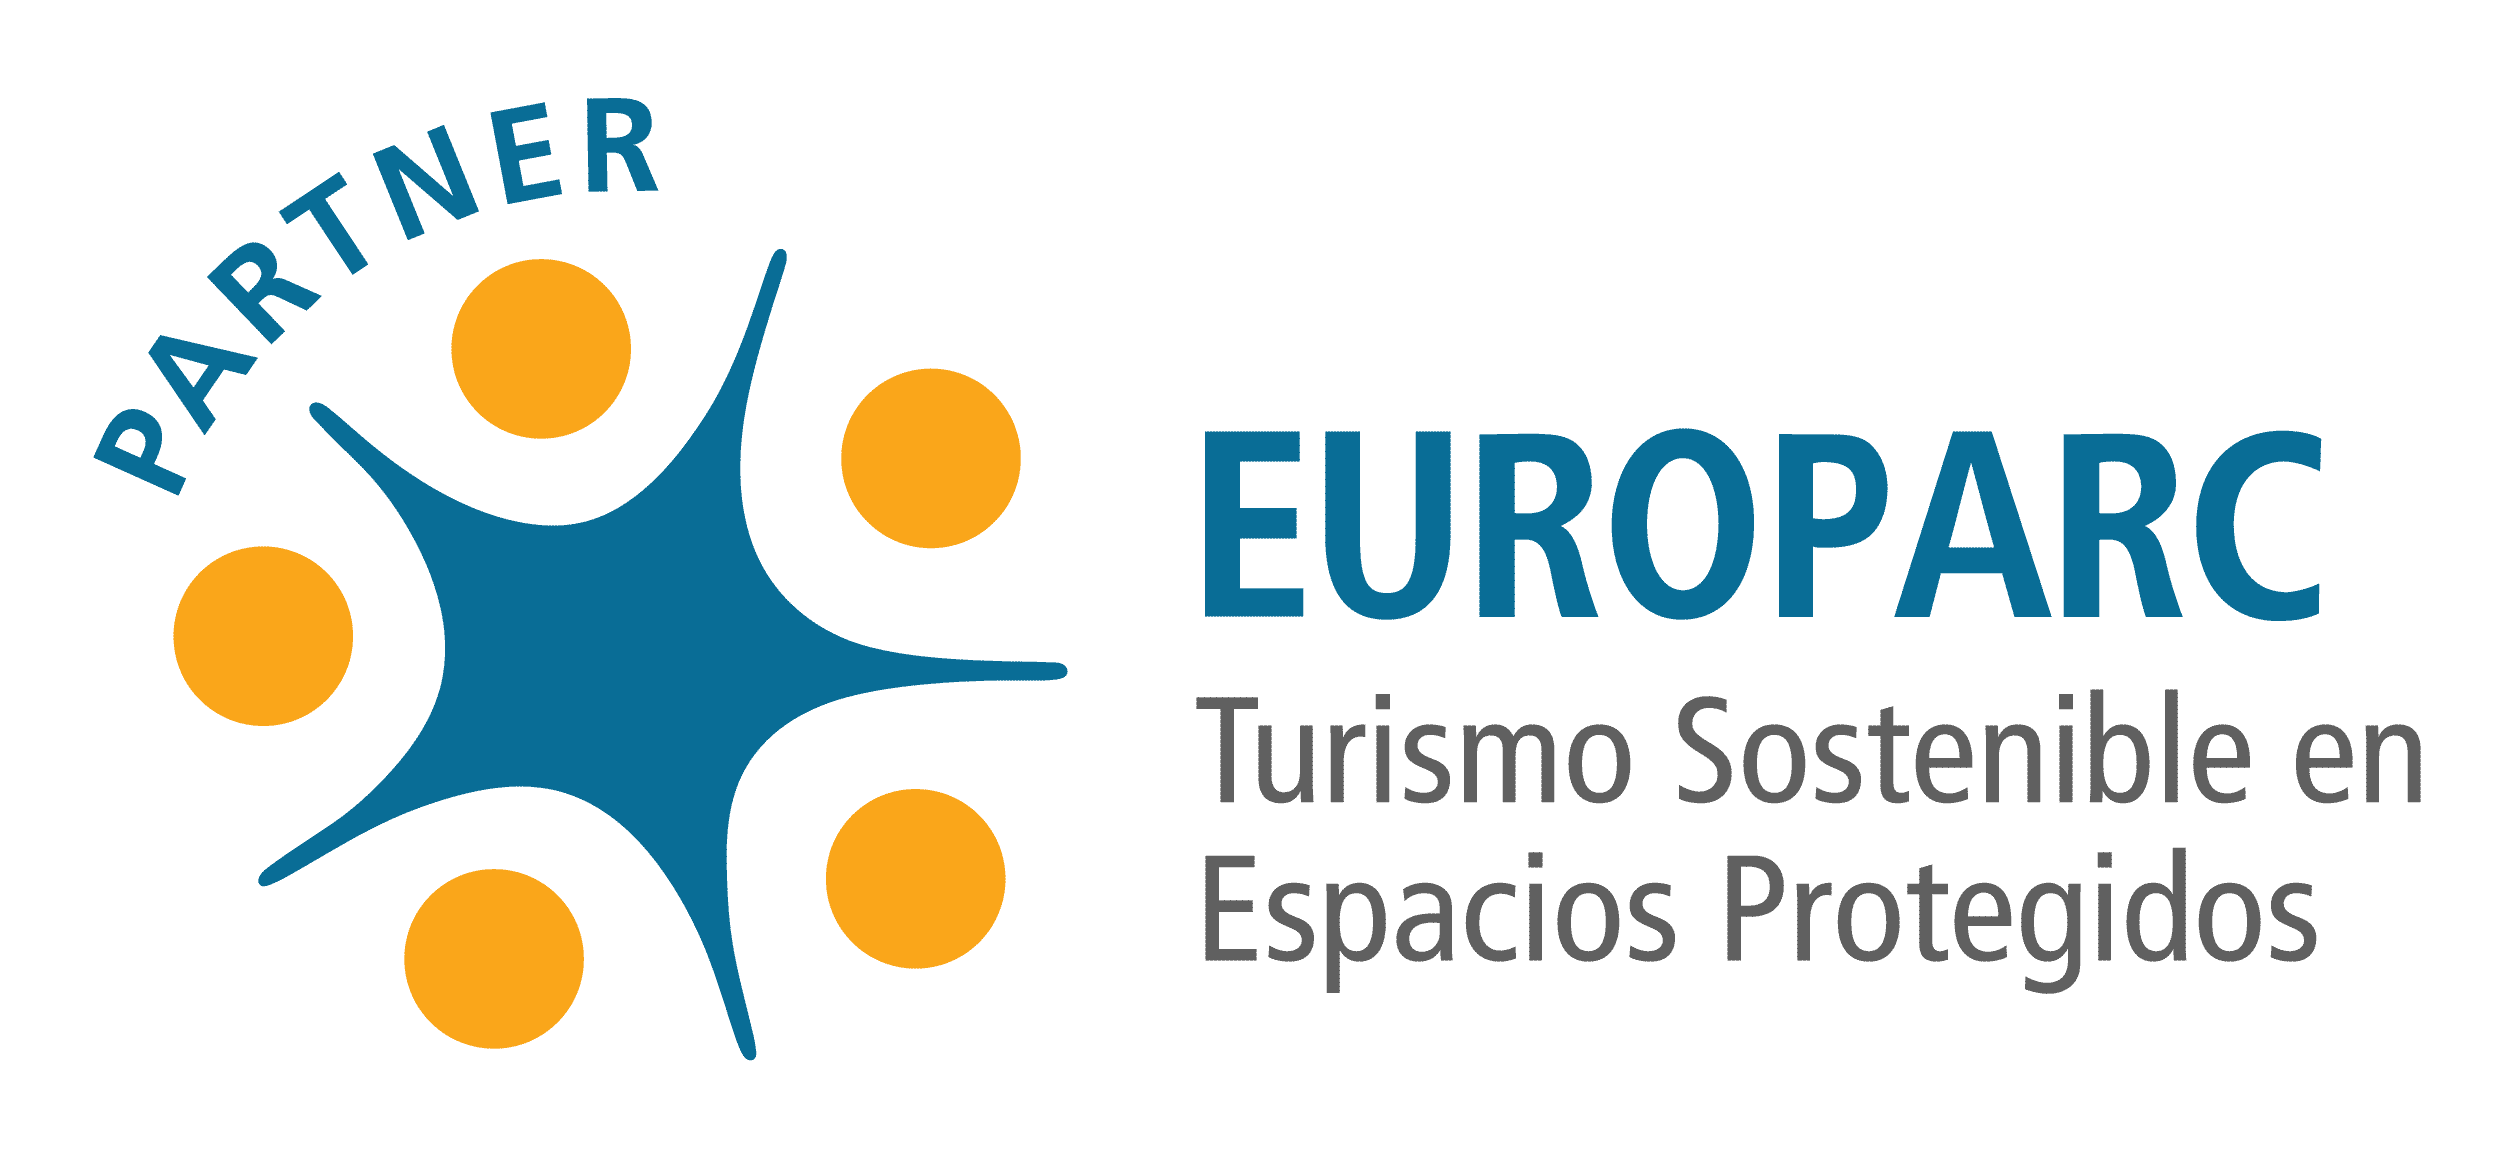 Europarc Turismo sostenible en espacios protegidos